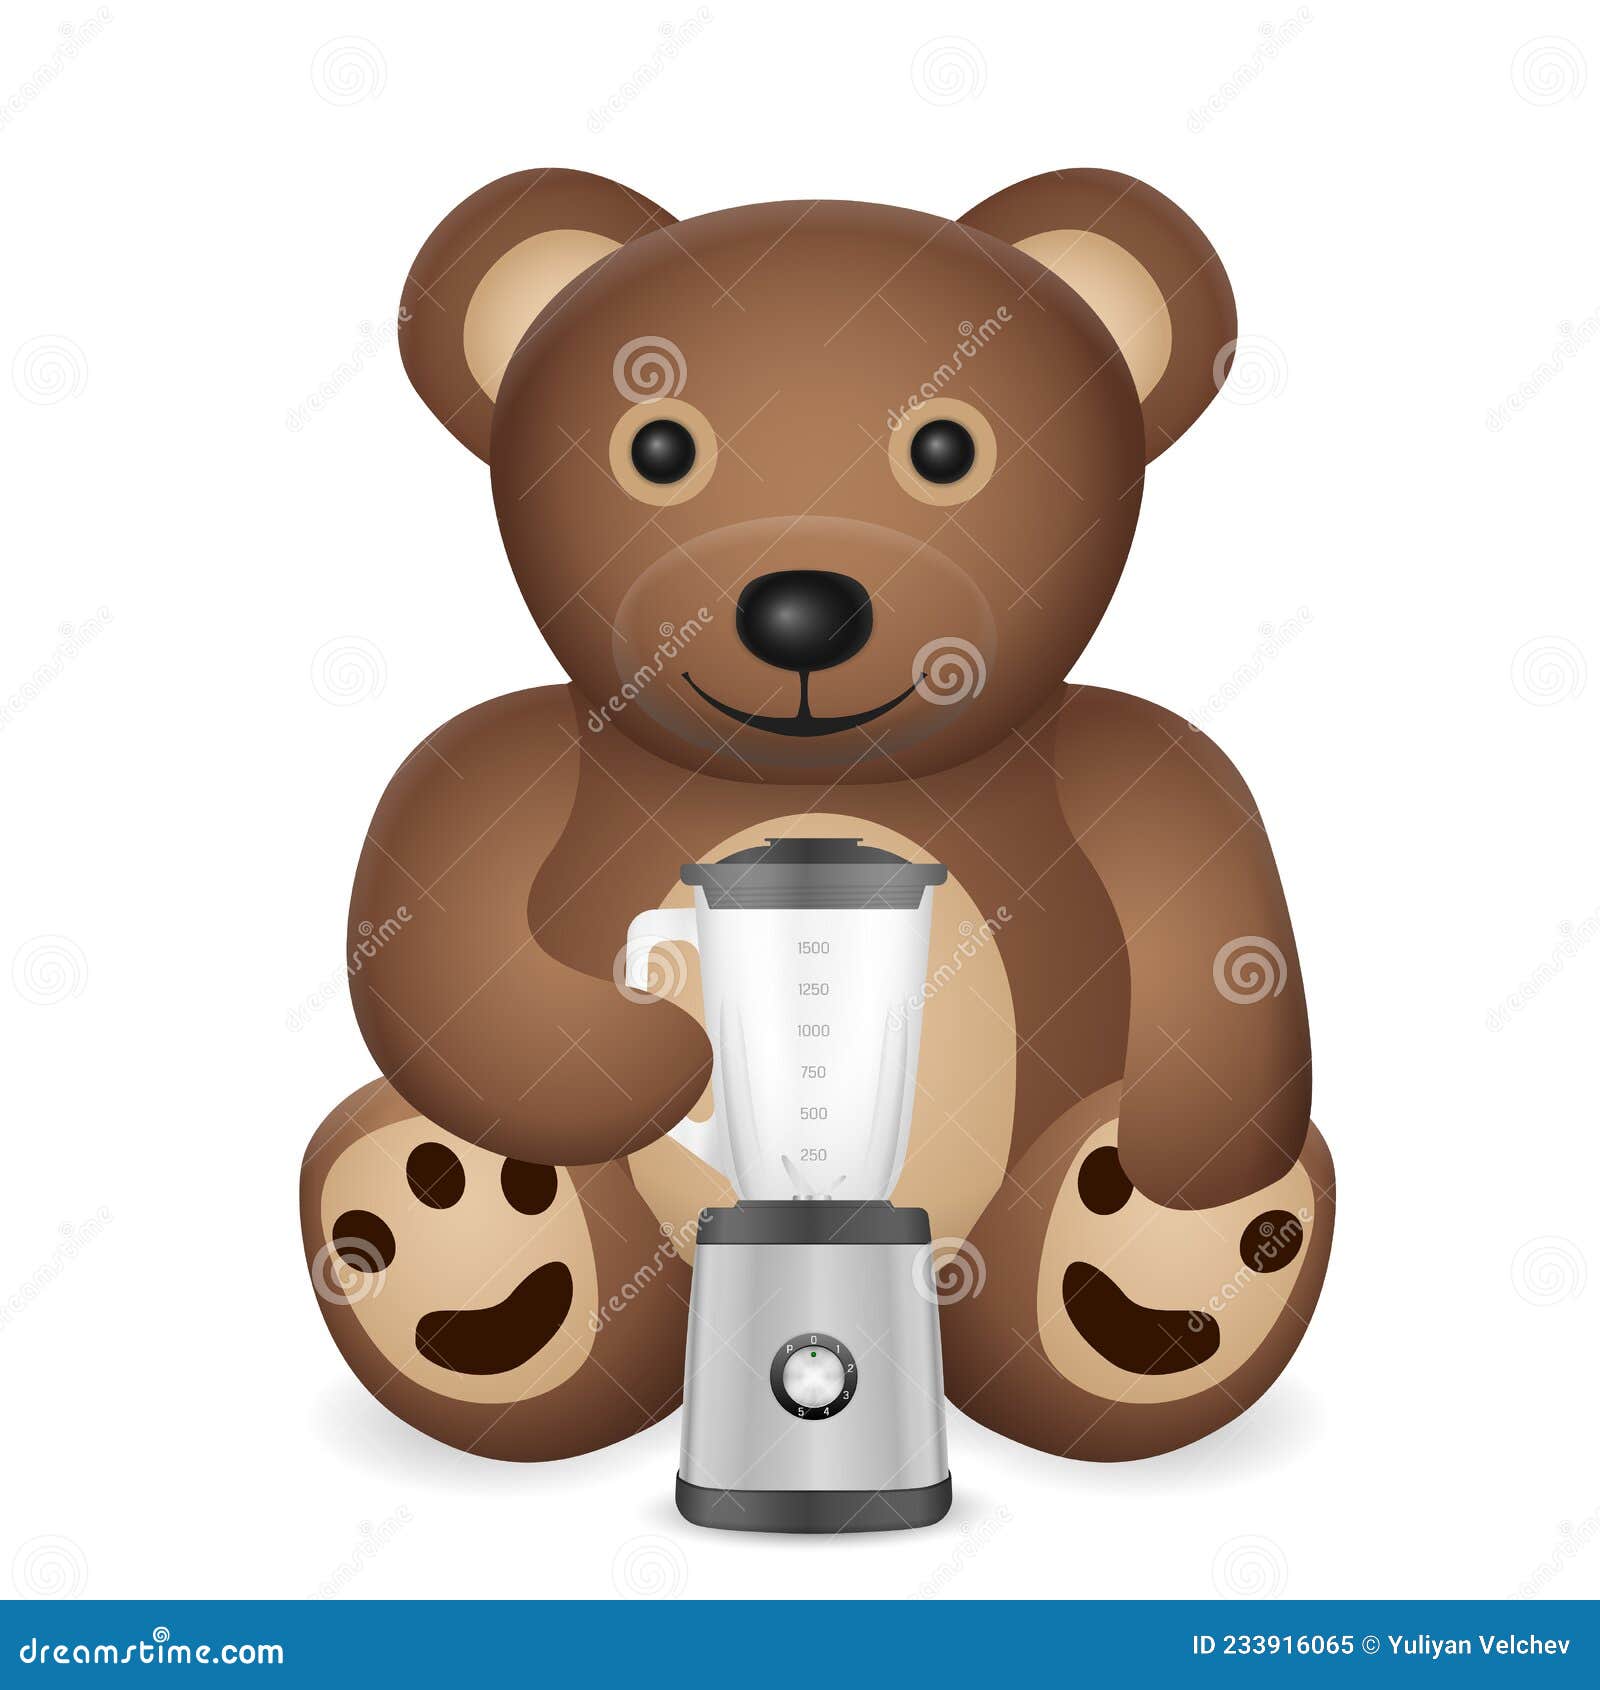 https://thumbs.dreamstime.com/z/teddy-bear-kitchen-blender-white-background-vector-illustration-233916065.jpg